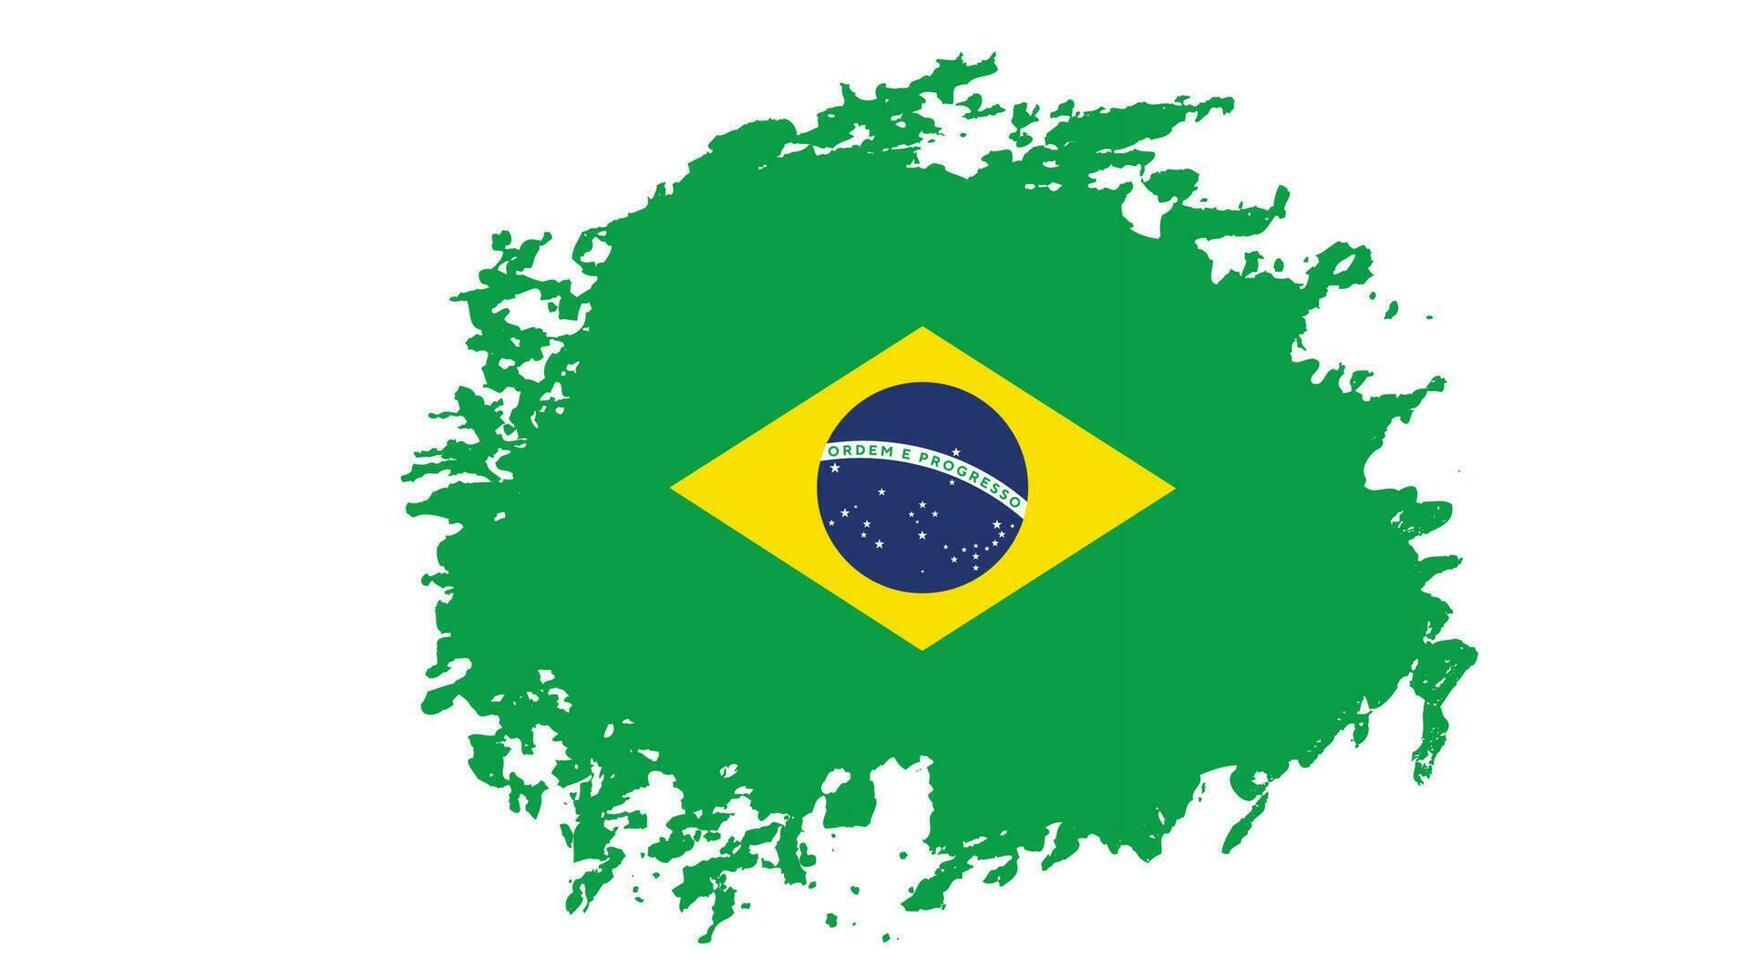 grunge textur verblasste brasilien flaggenvektor vektor